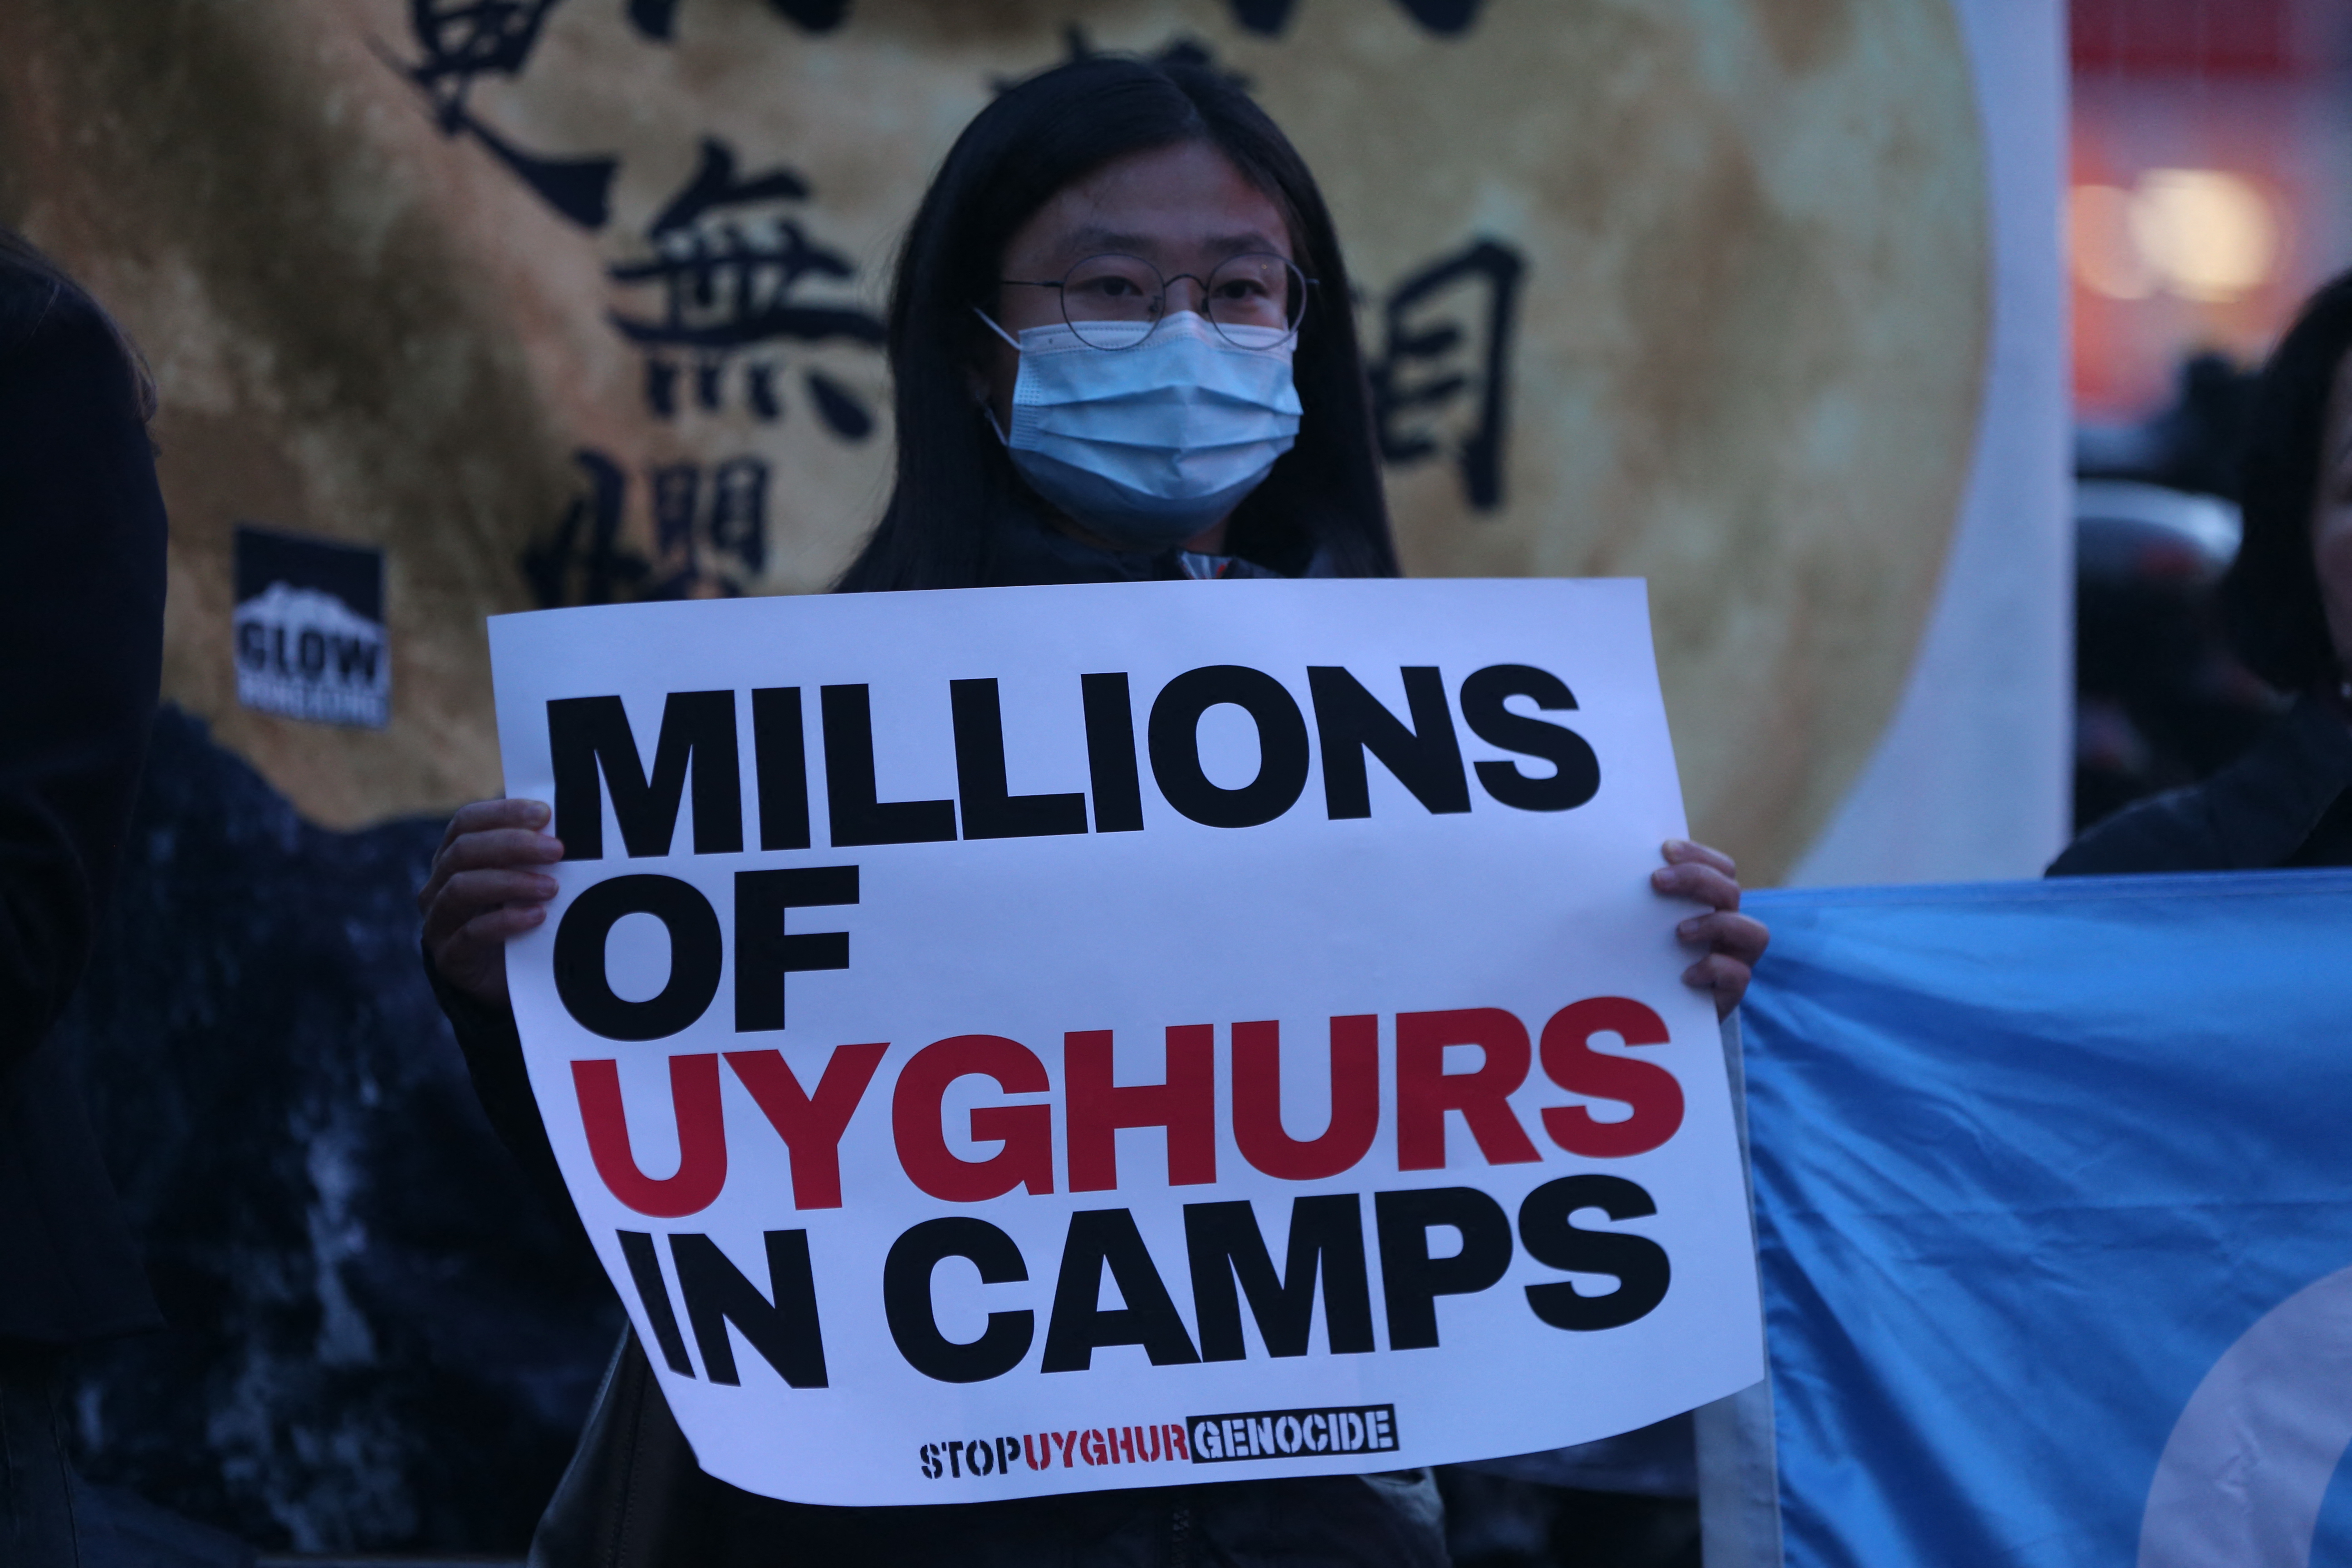 Egy amerikai cég is ujgur munkásokkal dolgoztat Kínában